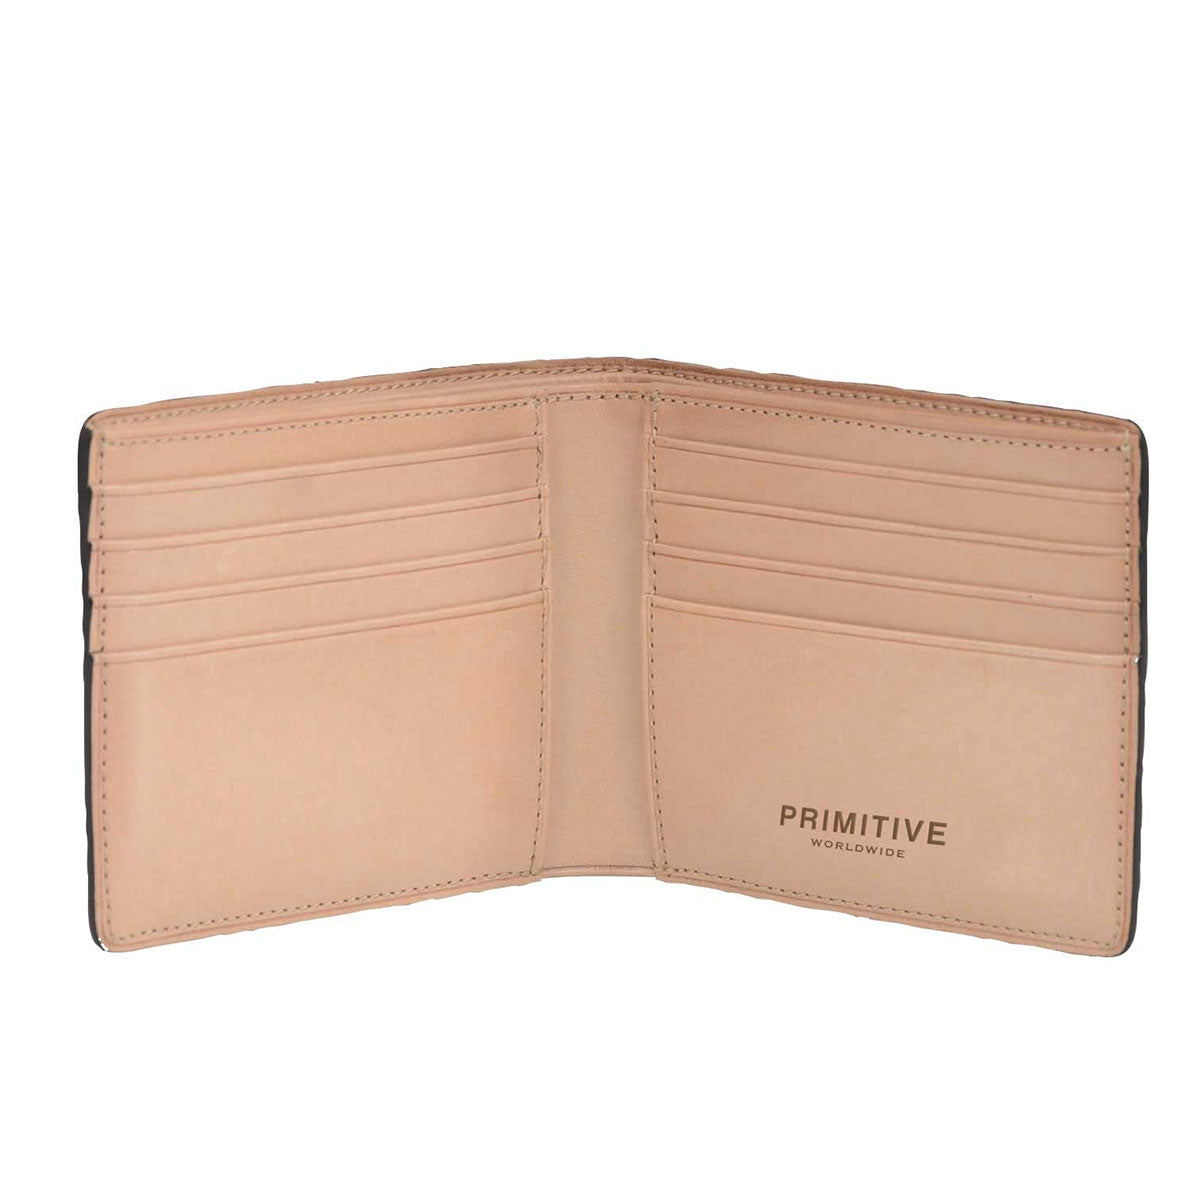 Primitive Nuevo Bi-fold Wallet - Brown image 2